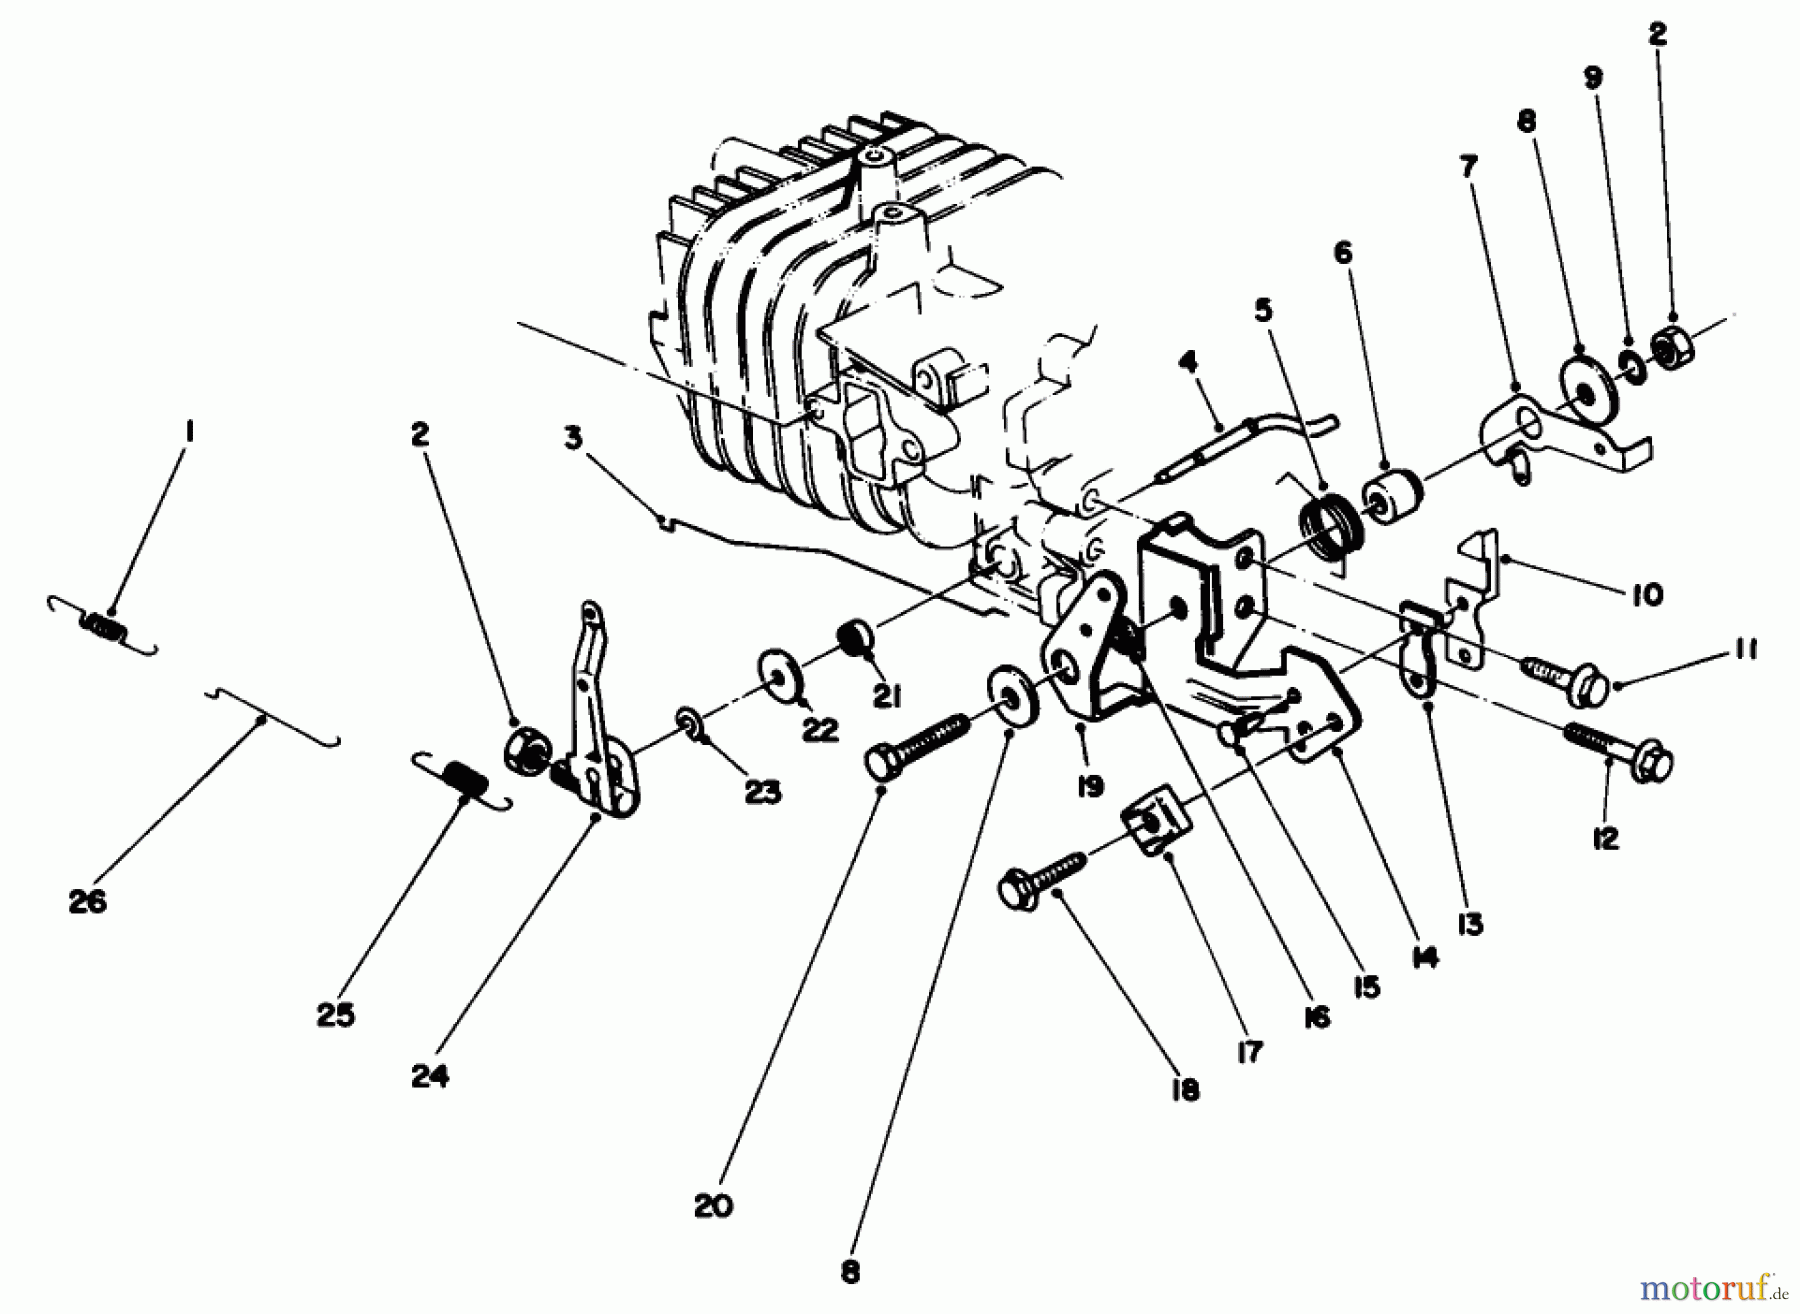  Toro Neu Mowers, Walk-Behind Seite 2 22680C - Toro Lawnmower, 1988 (8000001-8999999) ENGINE ASSEMBLY MODEL NO. 47PH7 #4